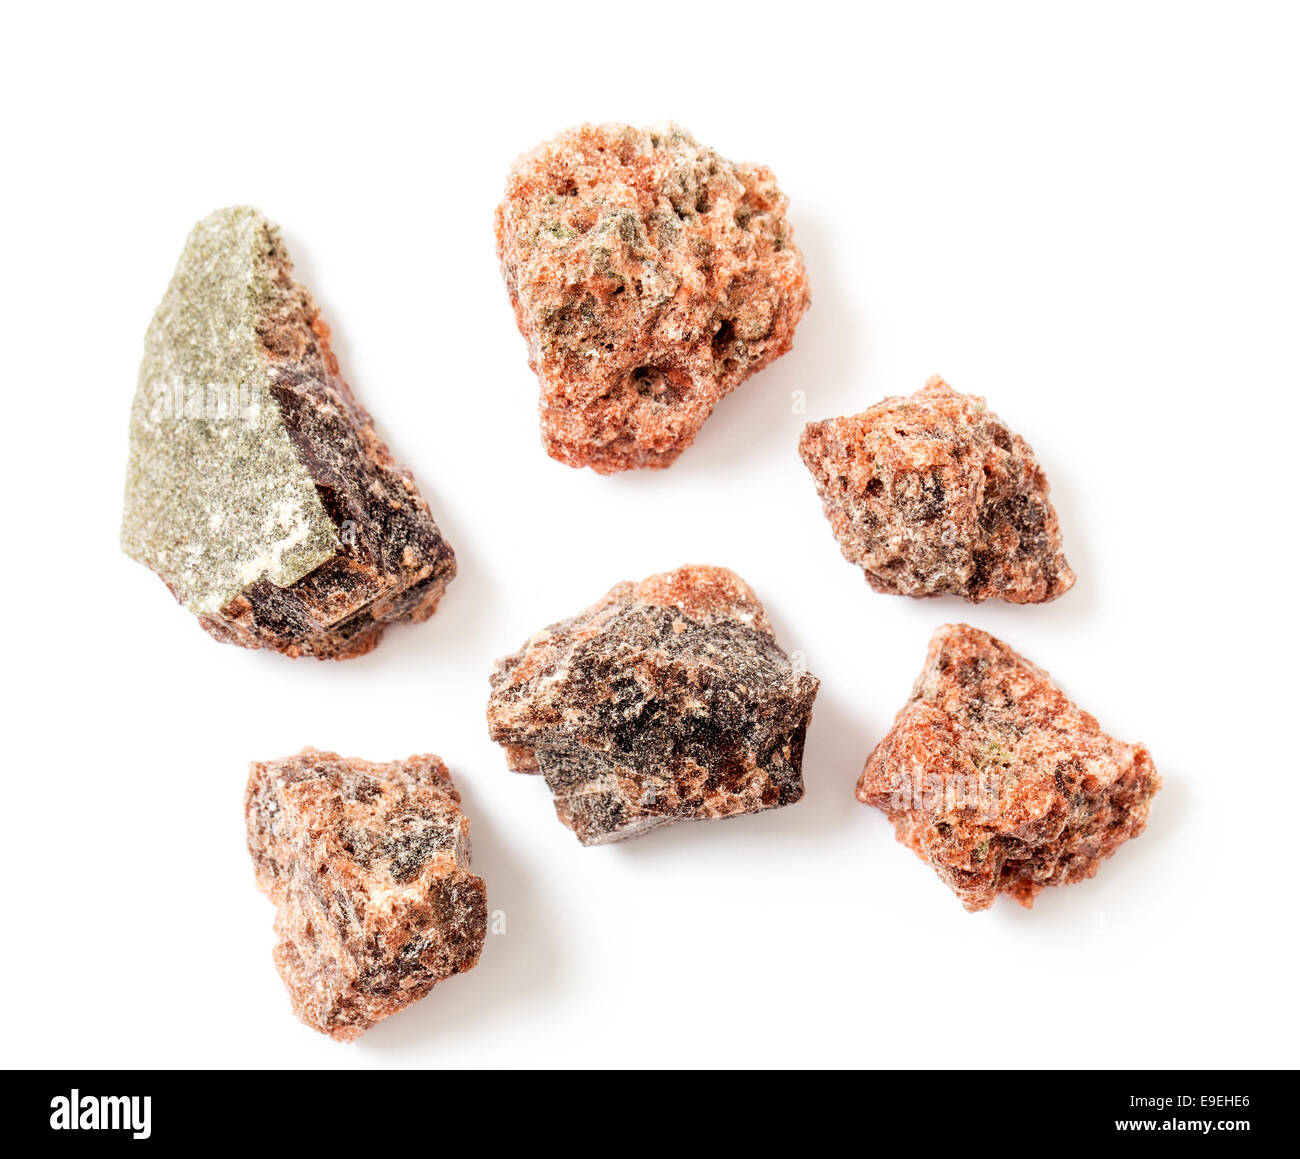 Sel noir, une variété impure de sel de roche contenant des composés de soufre, utilisé dans la cuisine indienne. Banque D'Images